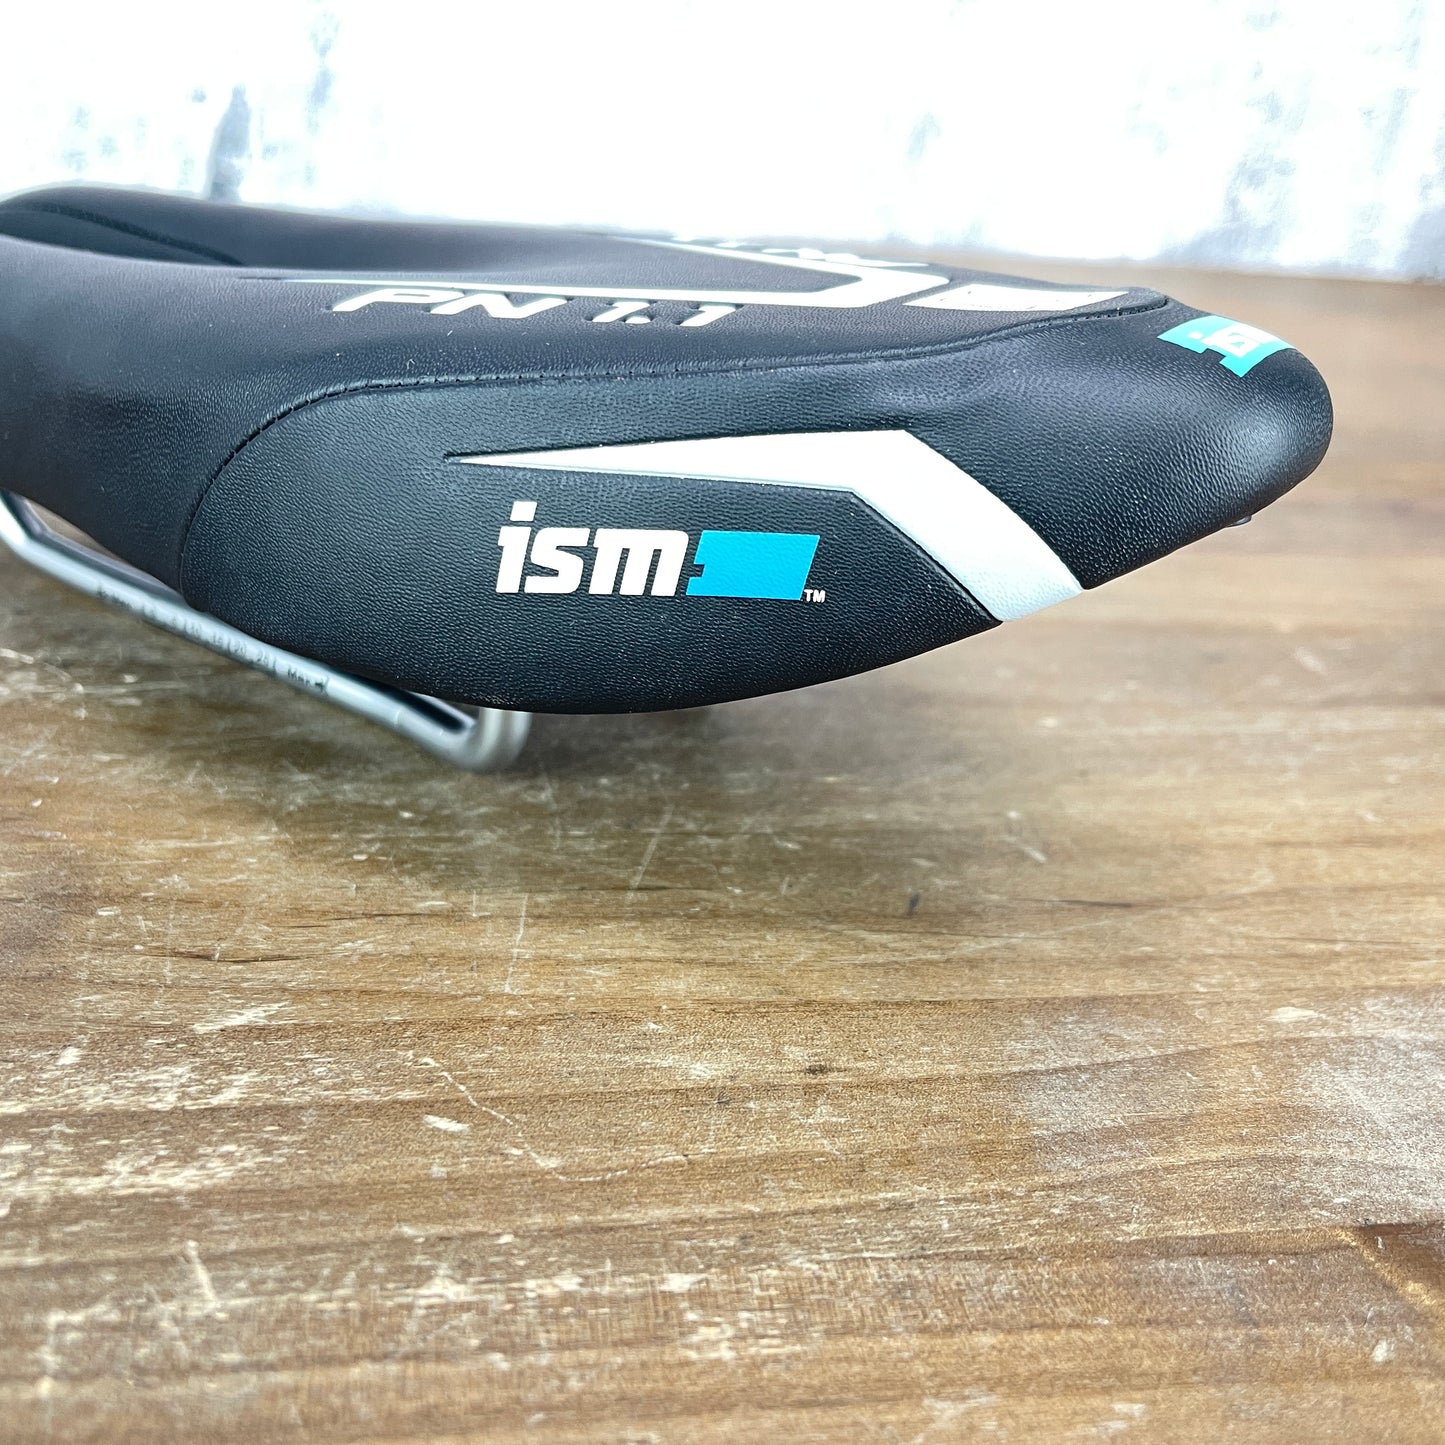 ISM PN 1.1 40 Noseless TT/Triathlon 110mm Alloy Rails Saddle 384g